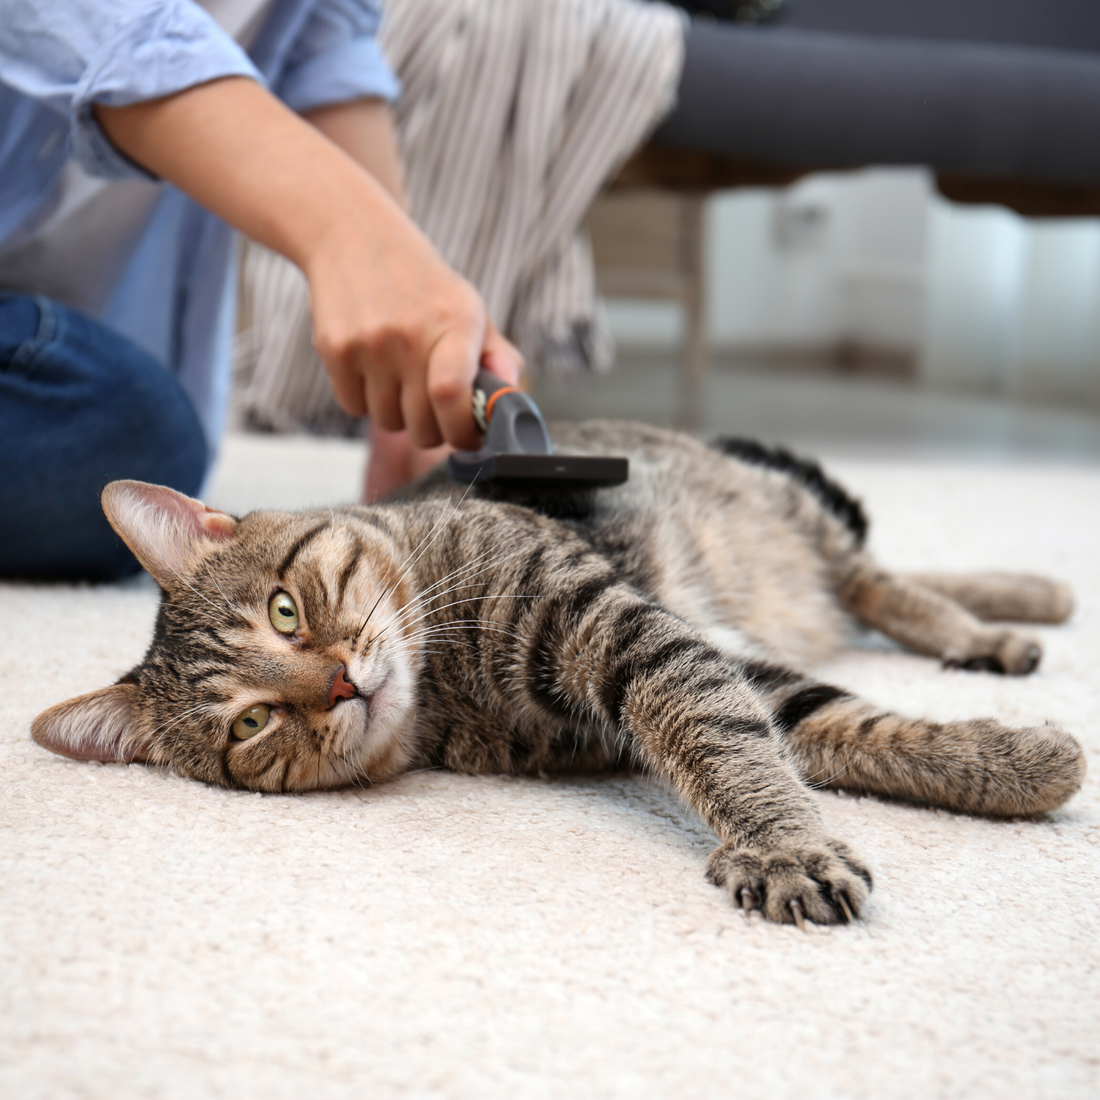 Fellpflege für Katzen – Besonders im Fellwechsel wichtig